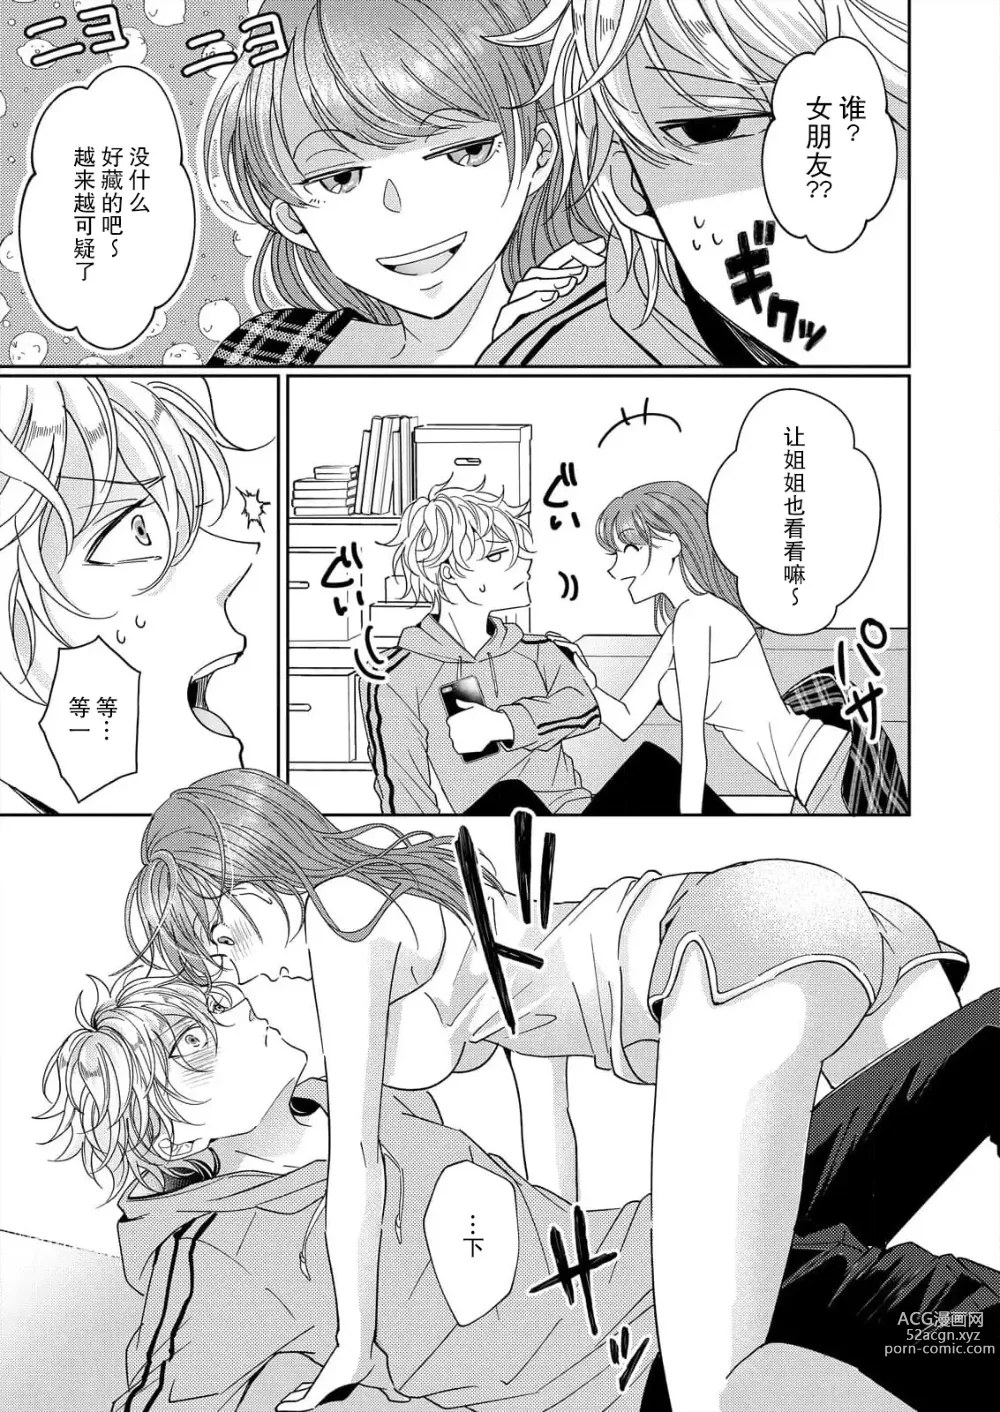 Page 7 of manga 姐弟时间结束~要做一些不能做的事情吗？1